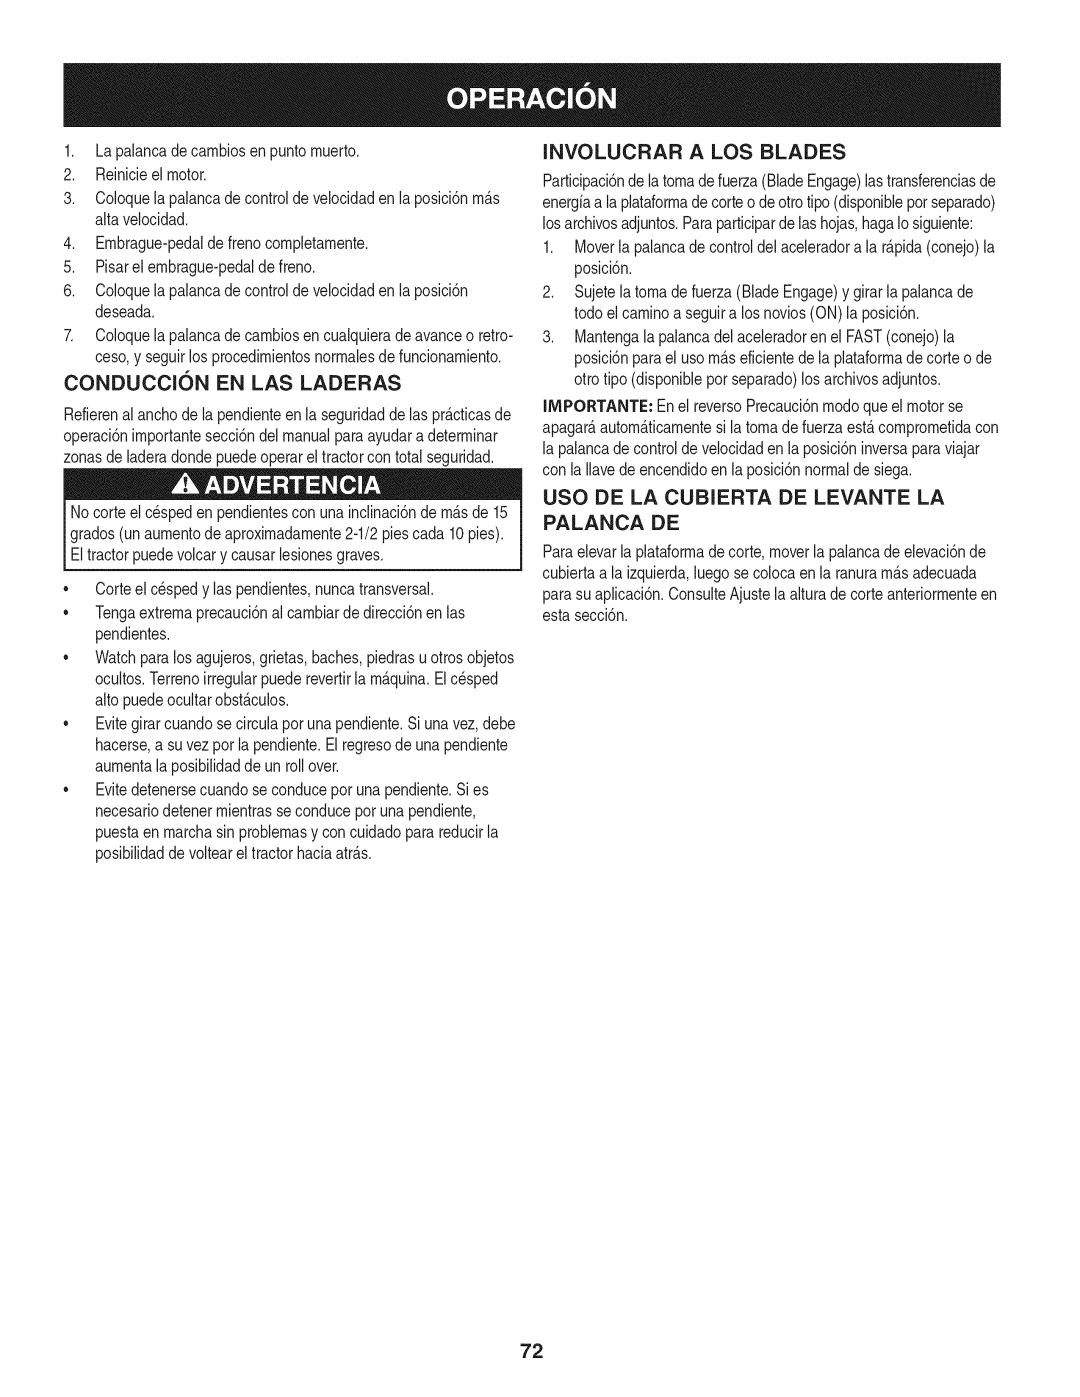 Craftsman 247.28901 manual Conduccion En Las Laderas, Involucrar A Los Blades, Uso De La Cubierta De Levante La Palanca De 